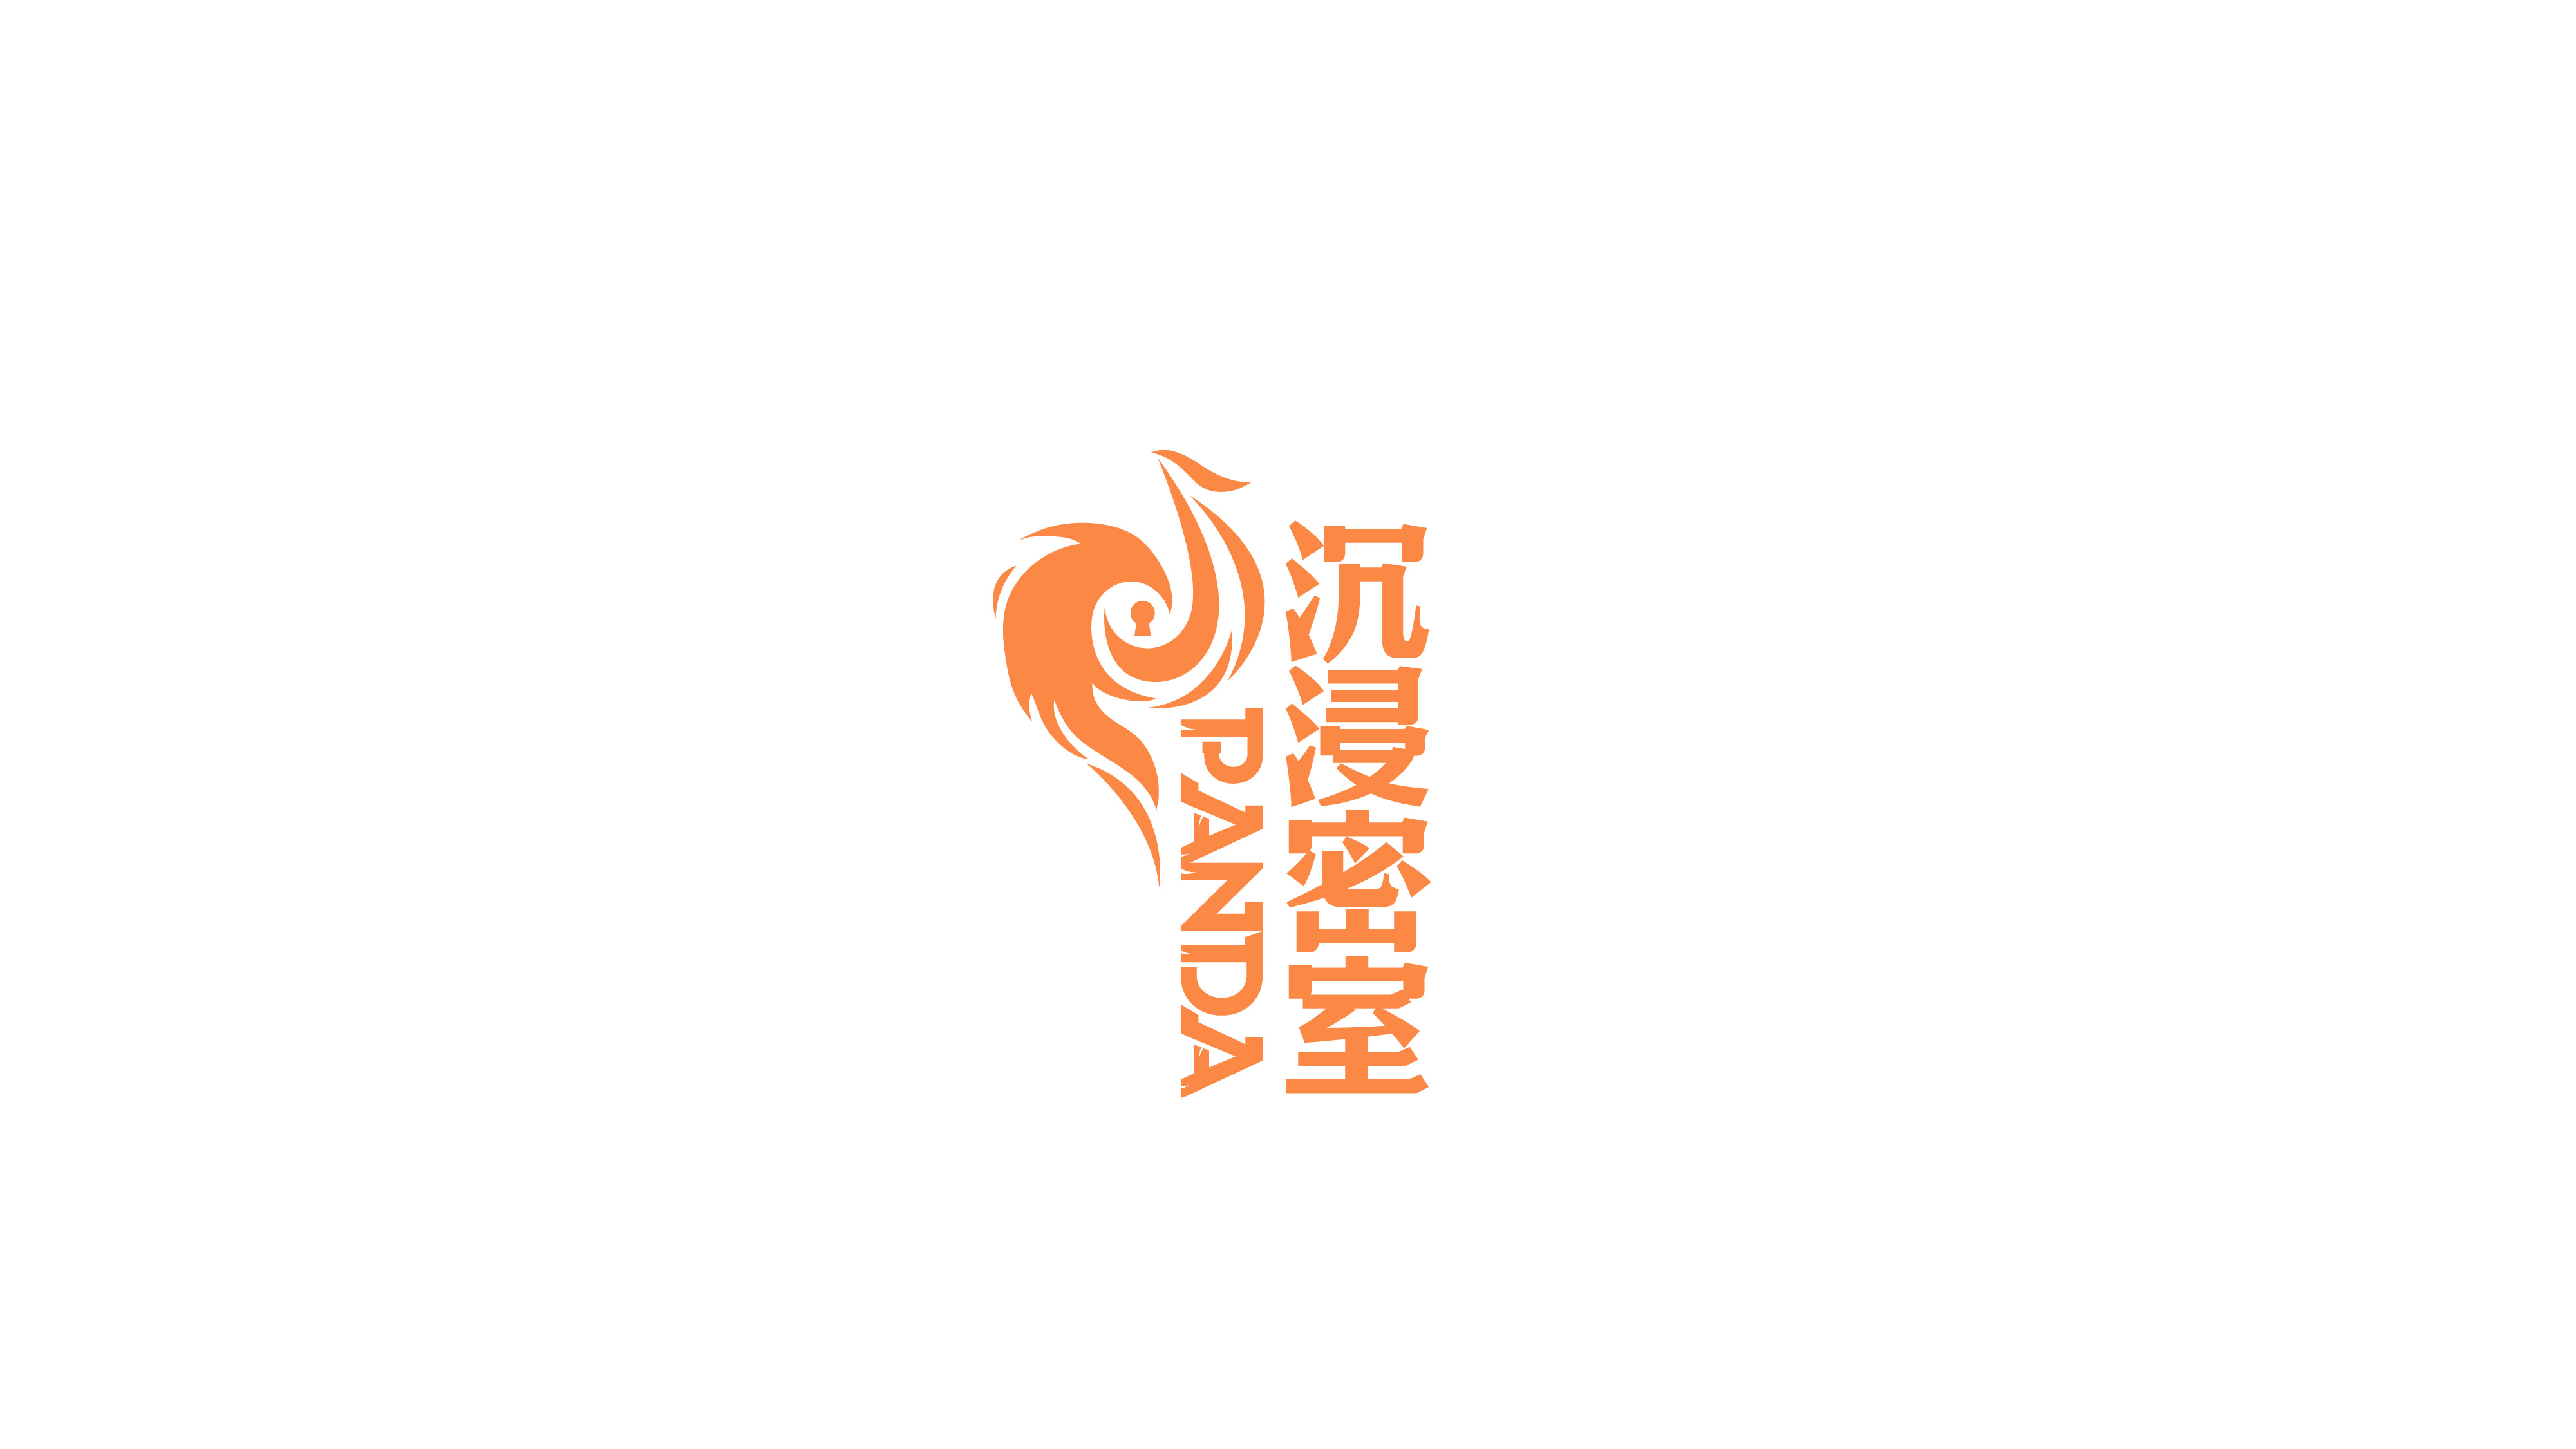 圖形標-娛樂類logo設計